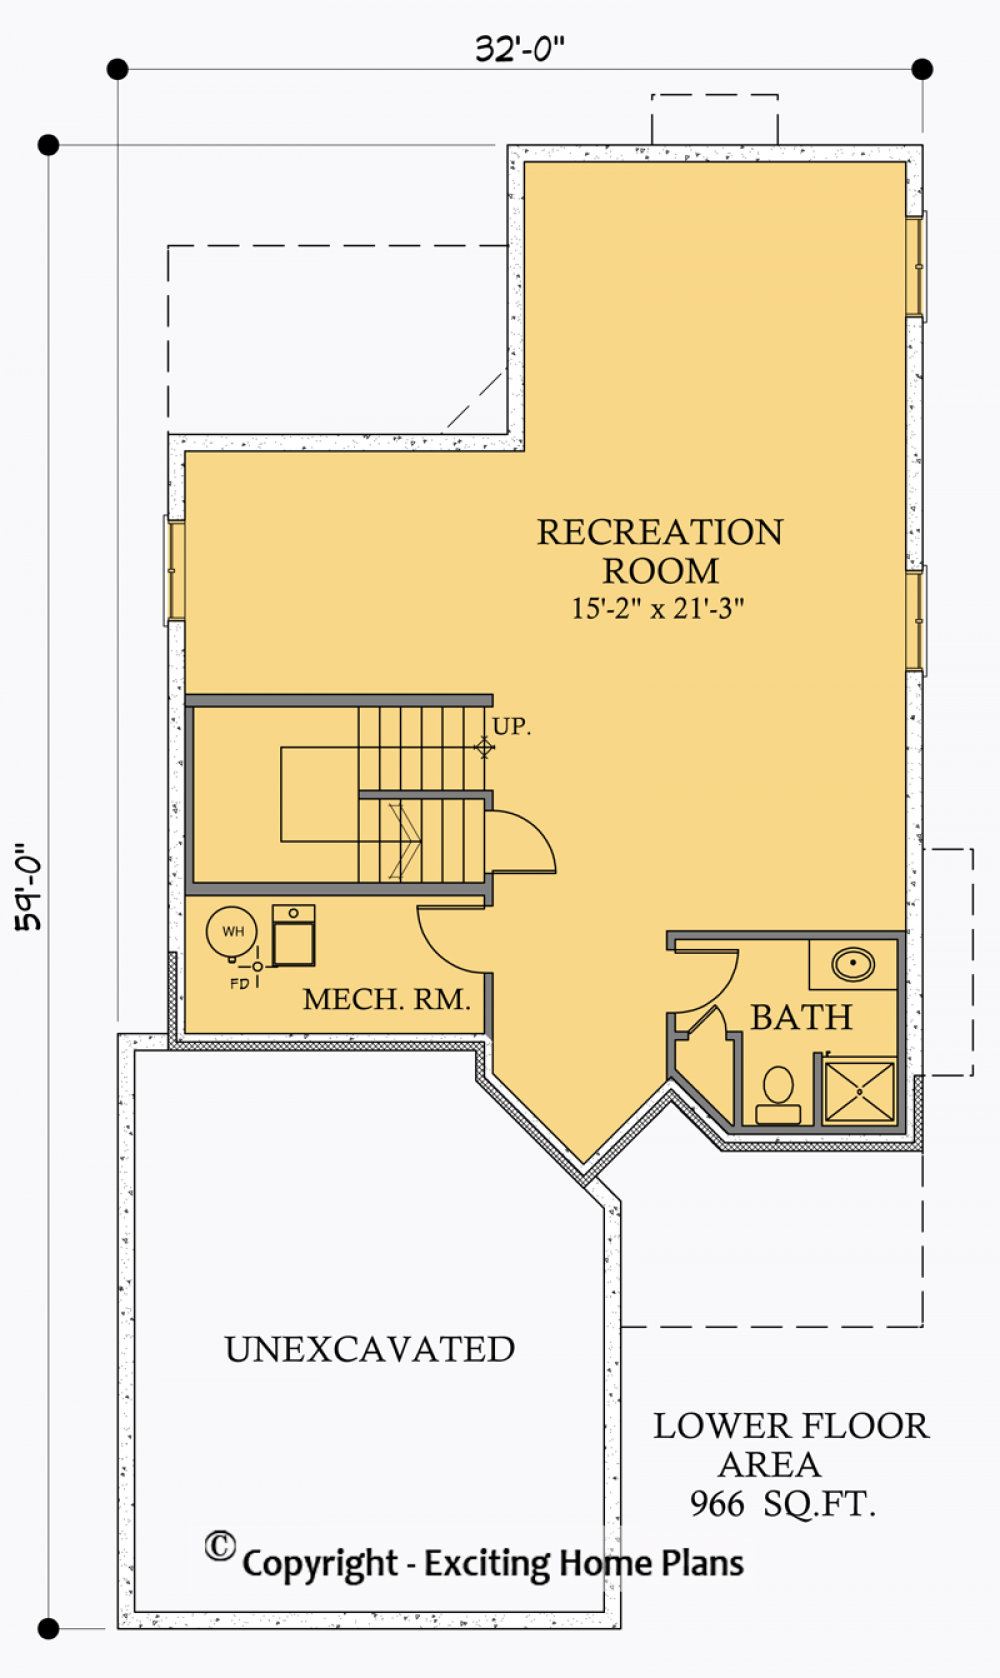 House Plan E1026-10 Lower Floor Plan